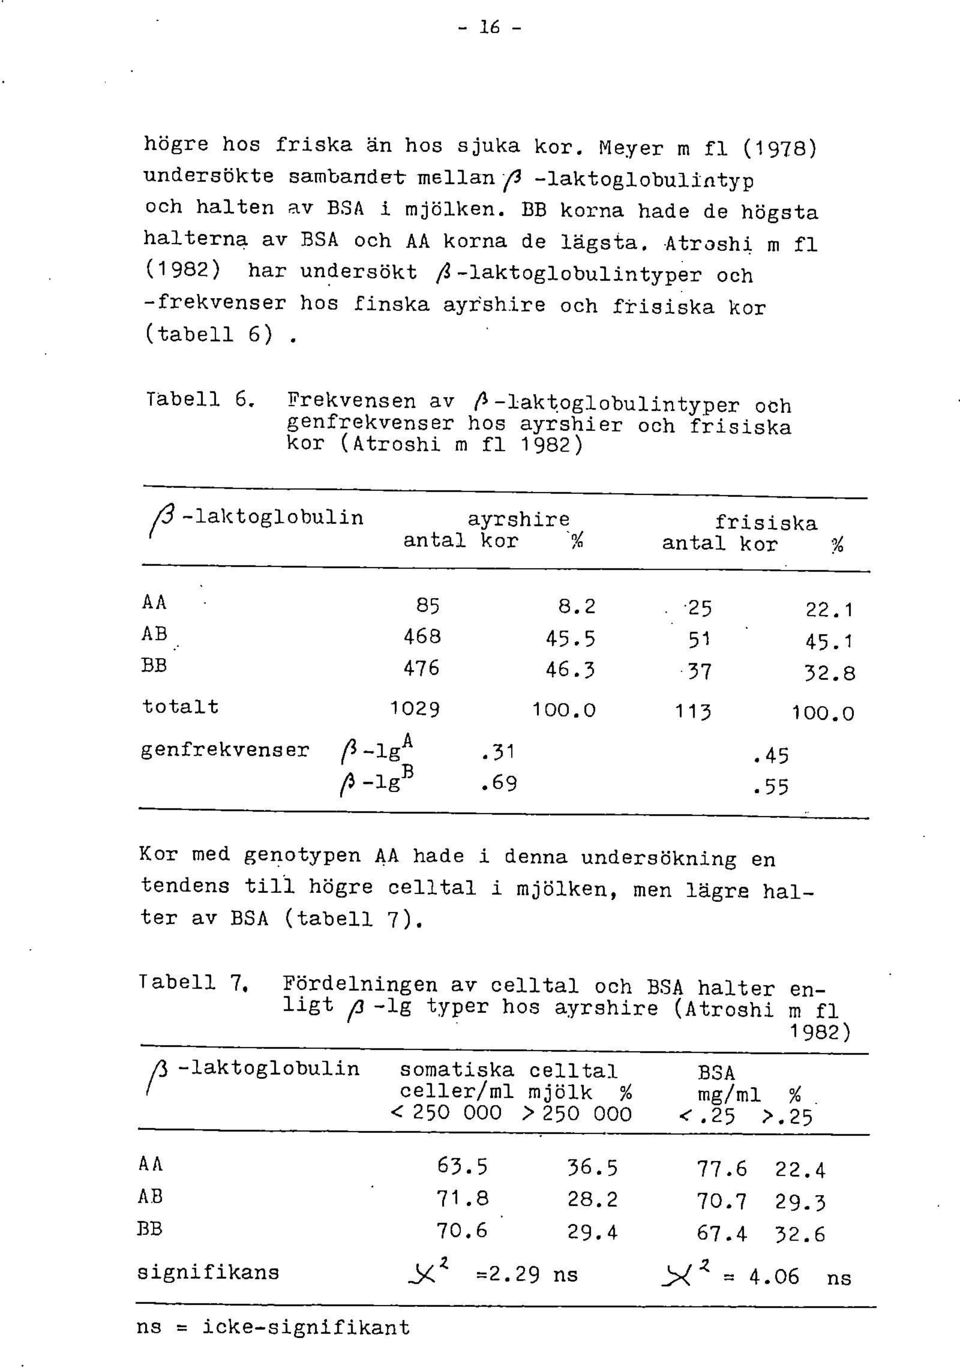 Frekvensen av P -laktoglobulintyper och genfrekvenser hos ayrshier och frisiska kor (Atroshi m fl 1982) (3-laktoglobulin ayrshire antal kor frisiska antal kor AA 85 8.2 25 22.1 AB 468 45.5 51 45.